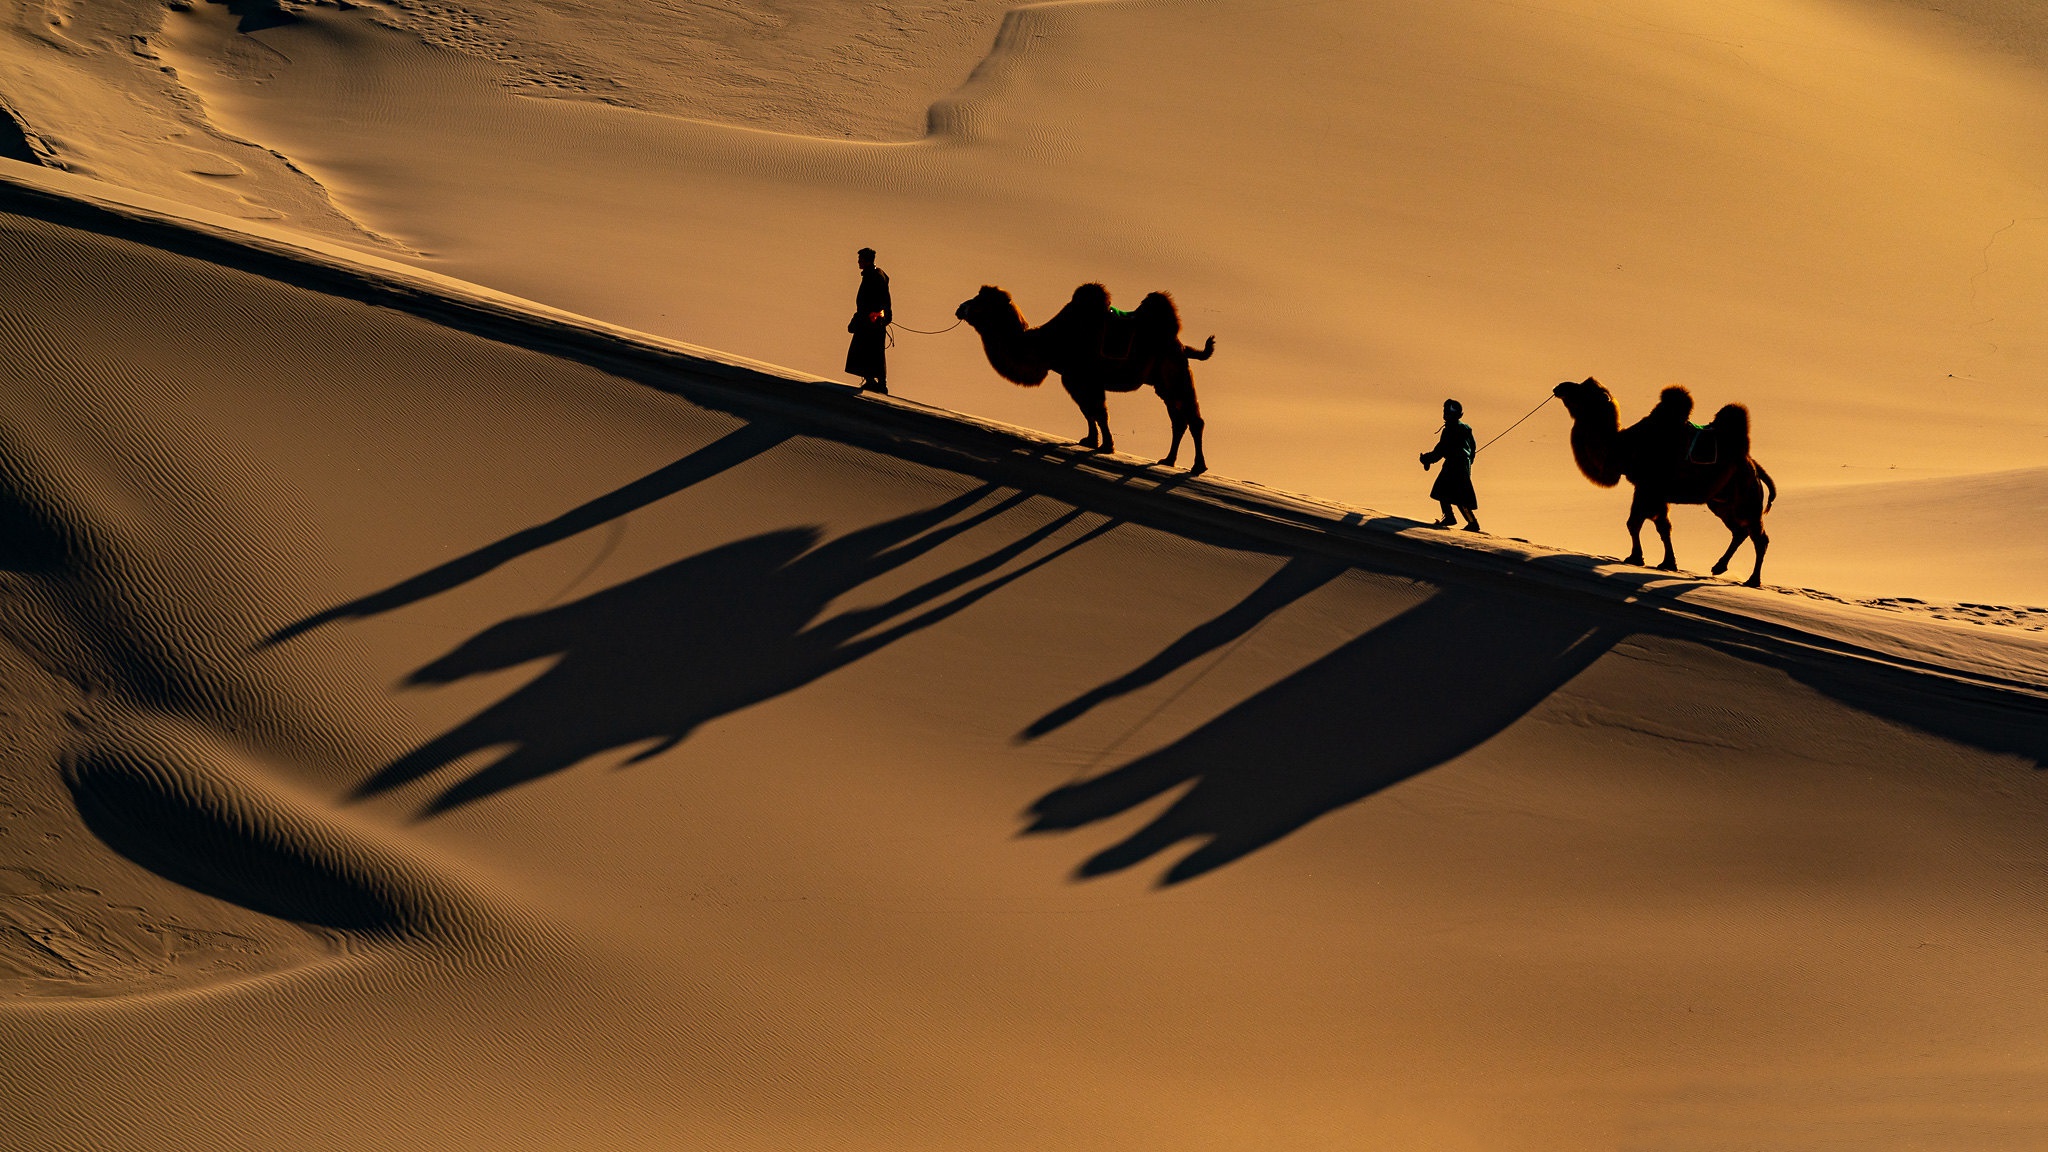 992021 descargar imagen fotografía, caravana, caravana de camellos, camello, desierto, celebridad: fondos de pantalla y protectores de pantalla gratis